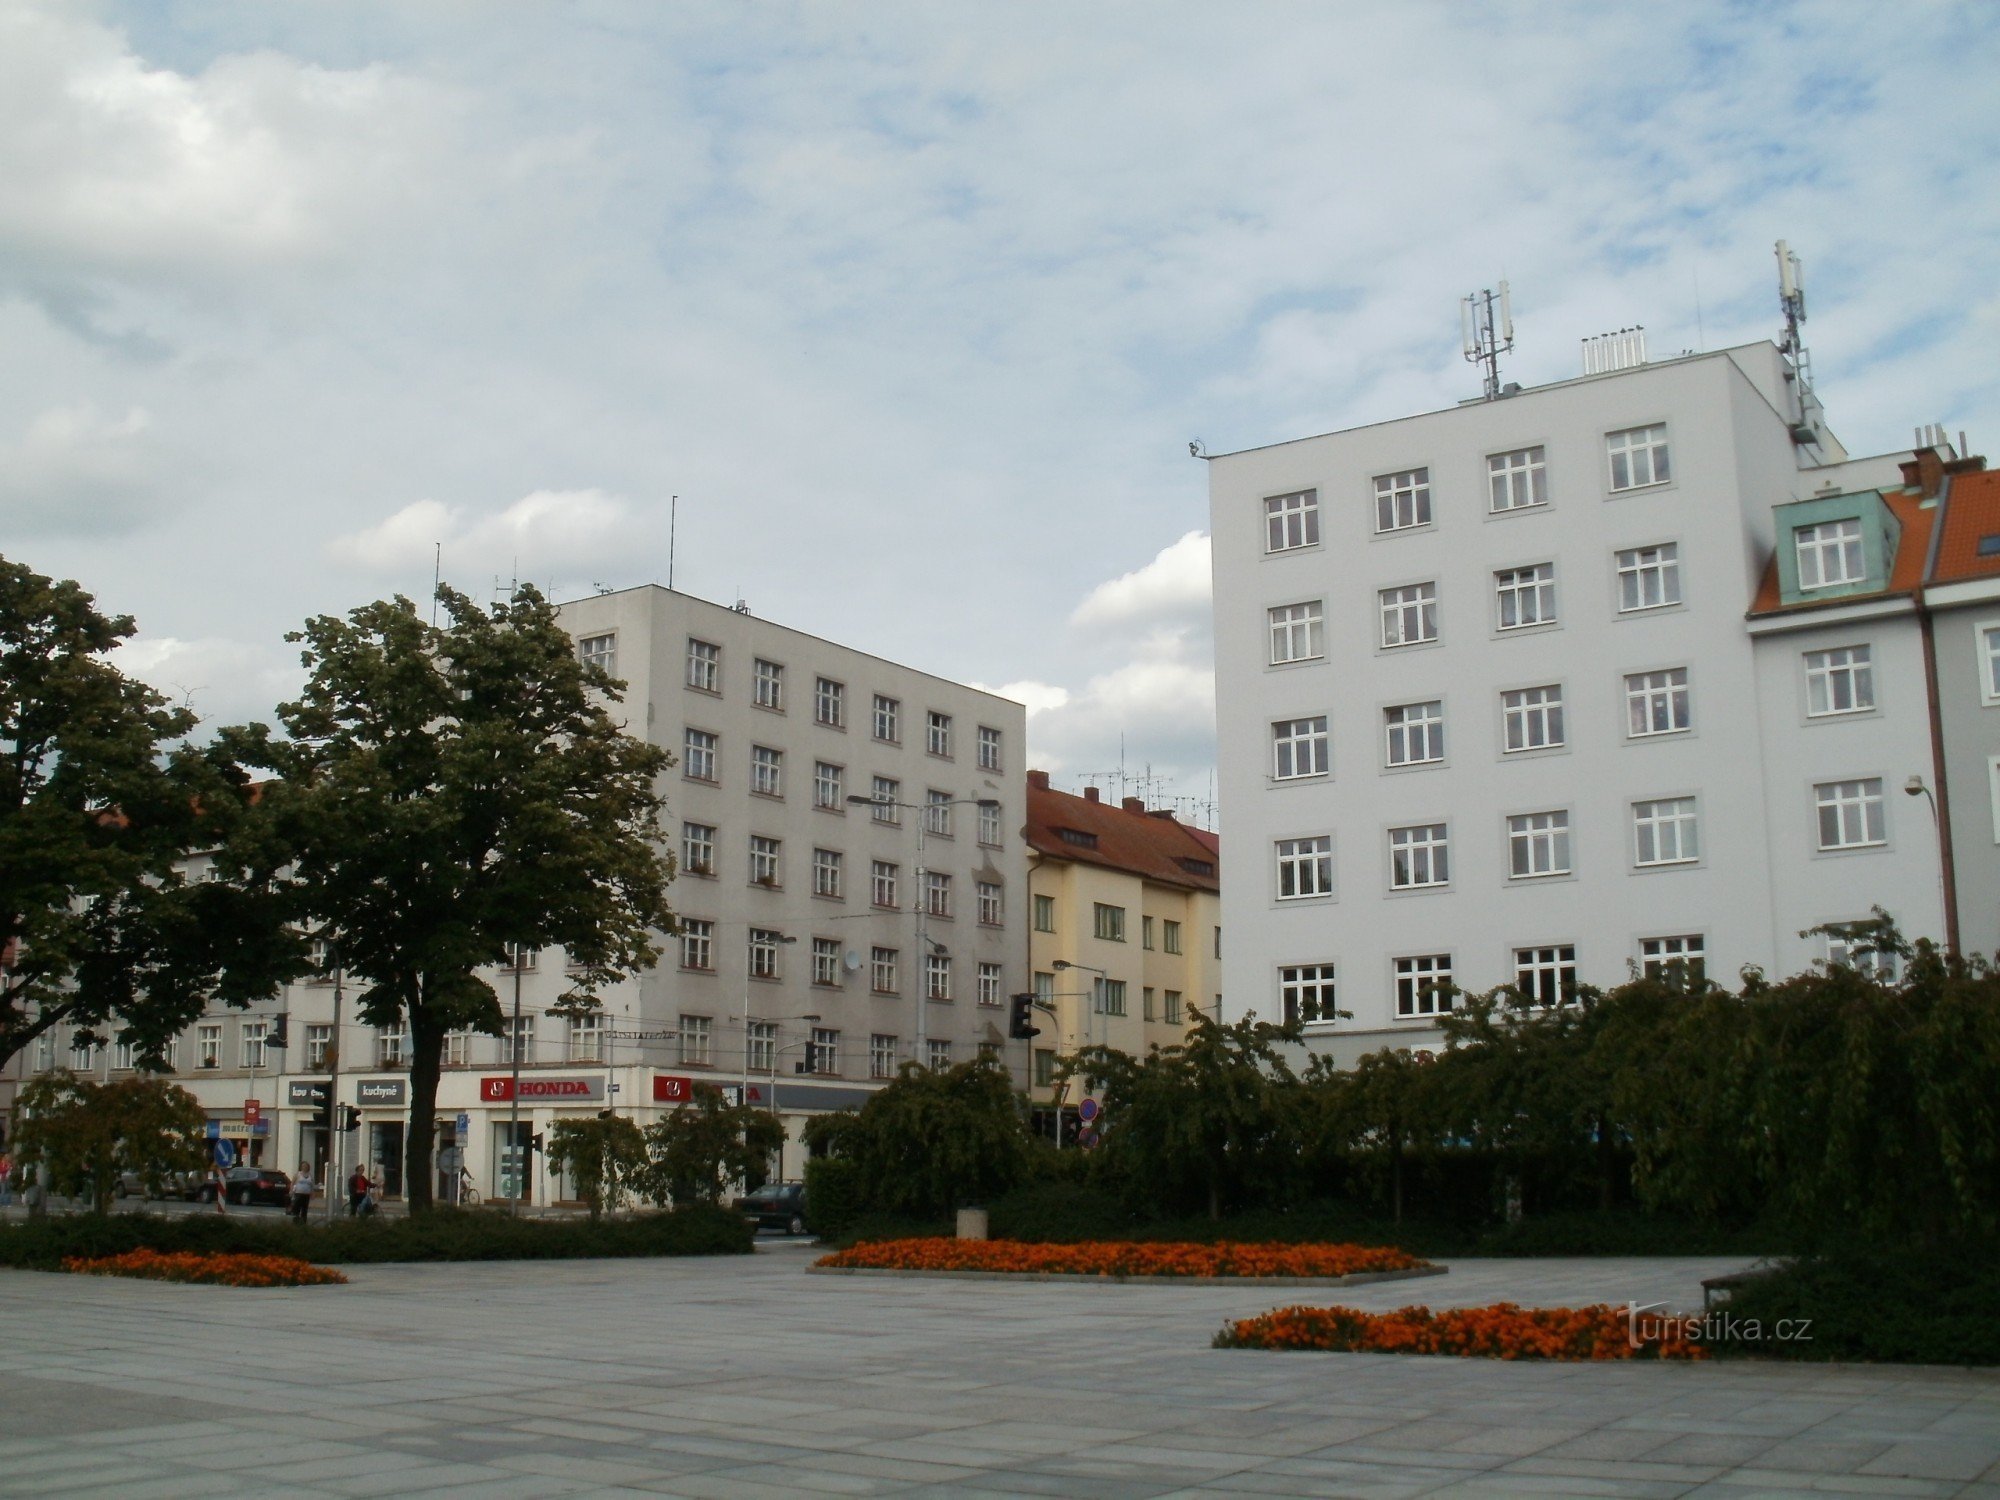 Hradec Králové - Ulrichov trg